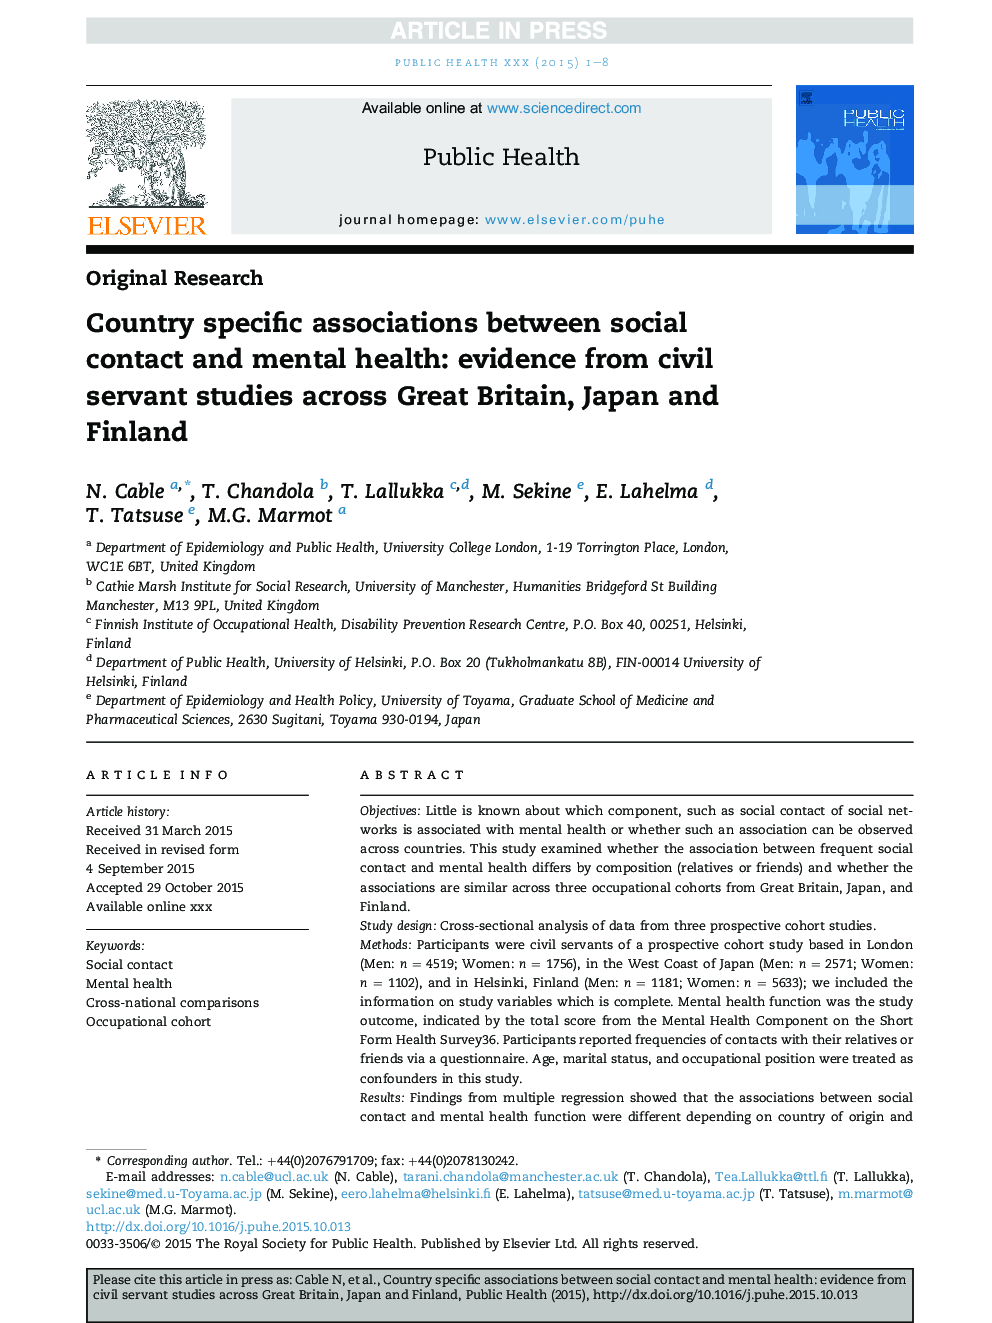 ارتباطات متقابل کشور بین مخاطب اجتماعی و سلامت روان: مدارکی از مطالعات کارمندان دولت در انگلیس، ژاپن و فنلاند 